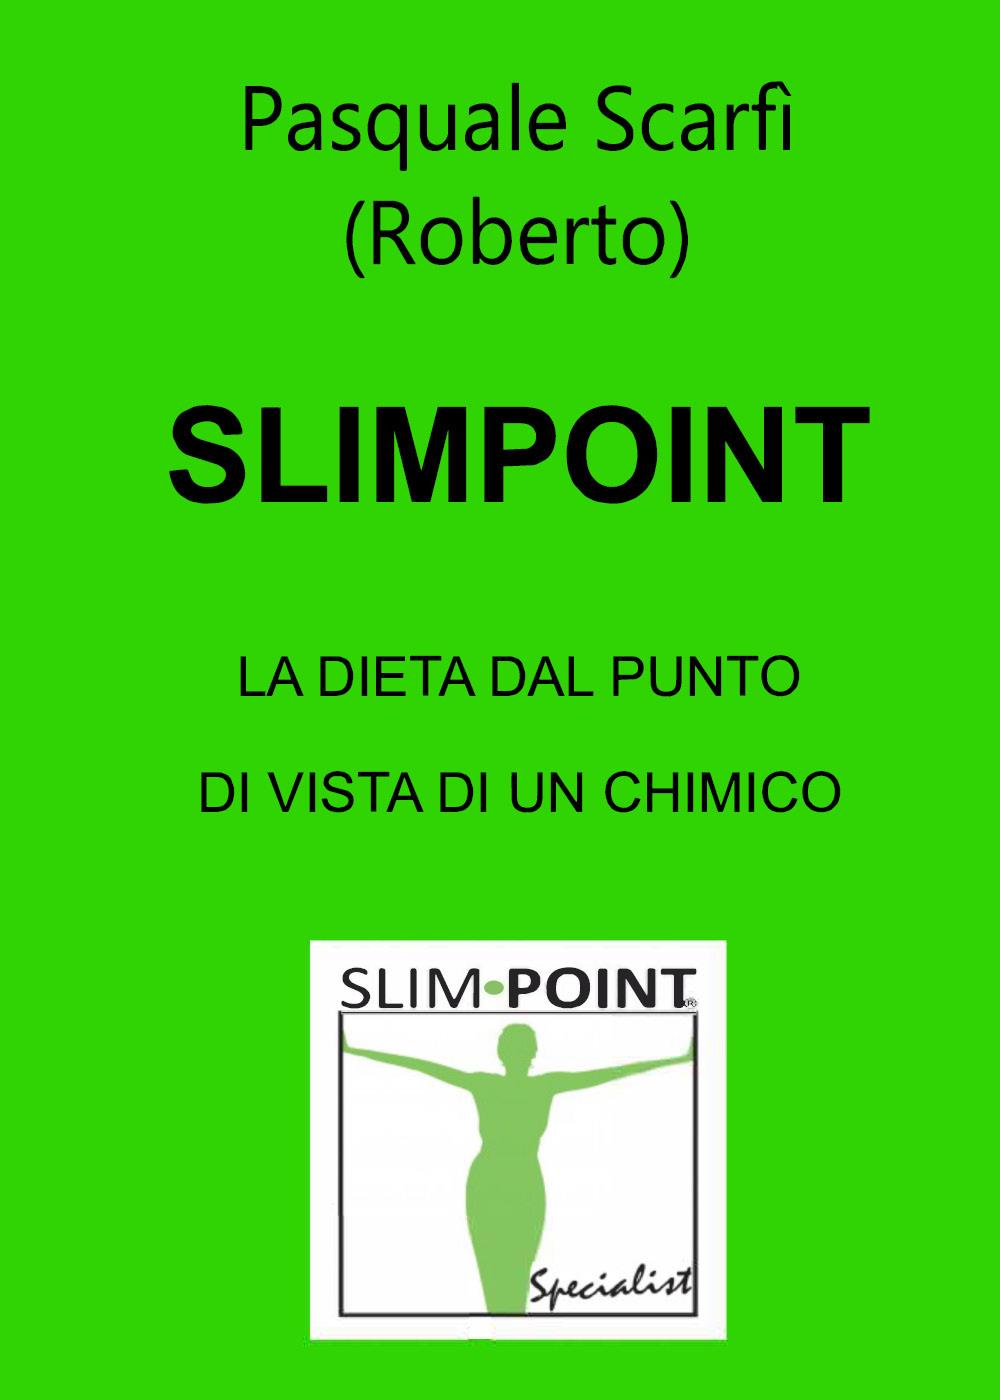 Slimpoint "La dieta dal punto di vista di un chimico"